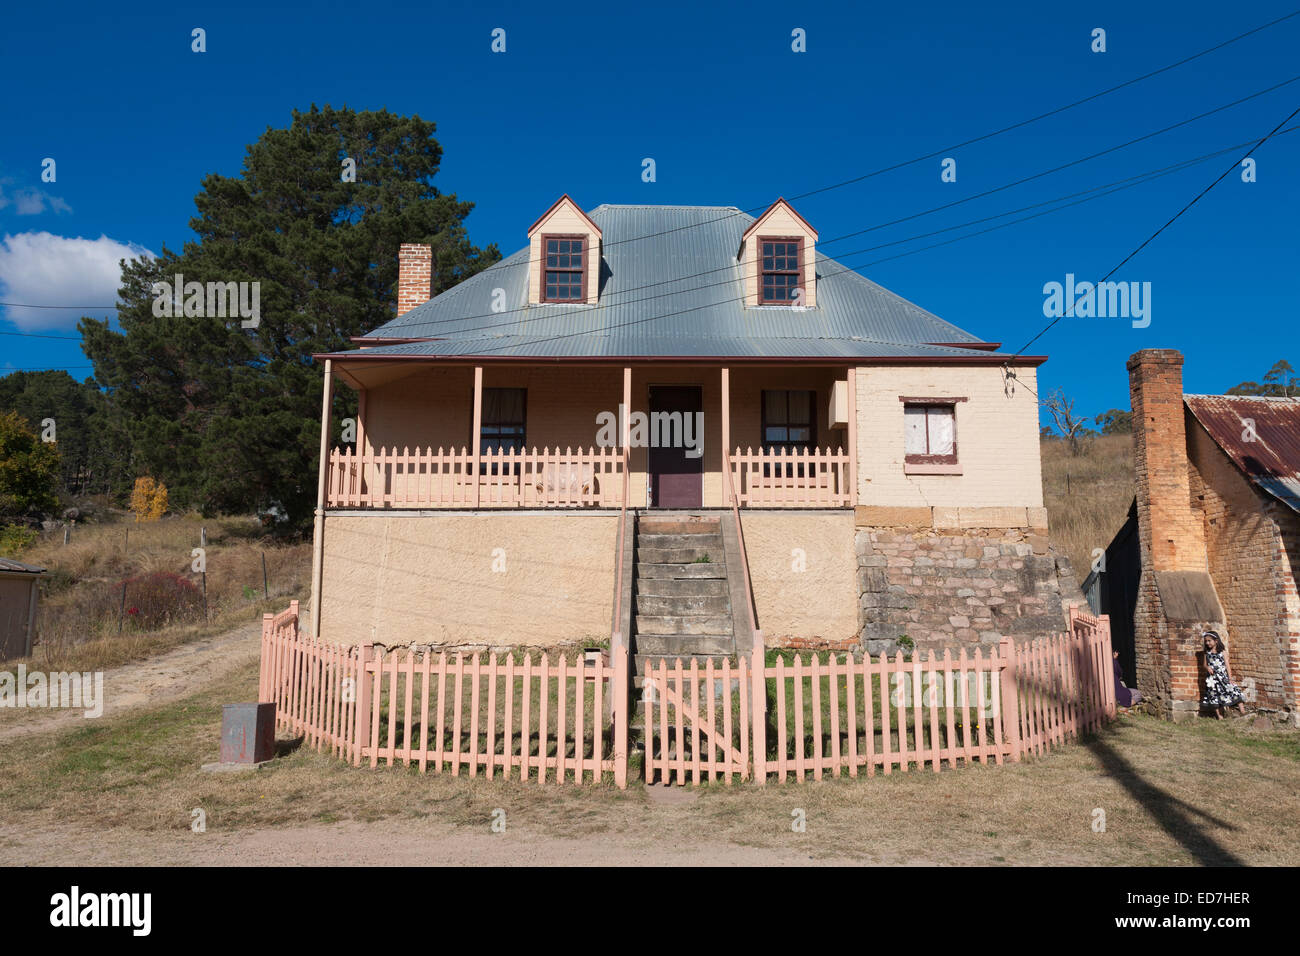 Ivy Cottage construit par la famille Finn (1850) dans la Pioneer Village de Hartley dans les Blue Mountains NSW Australie Banque D'Images